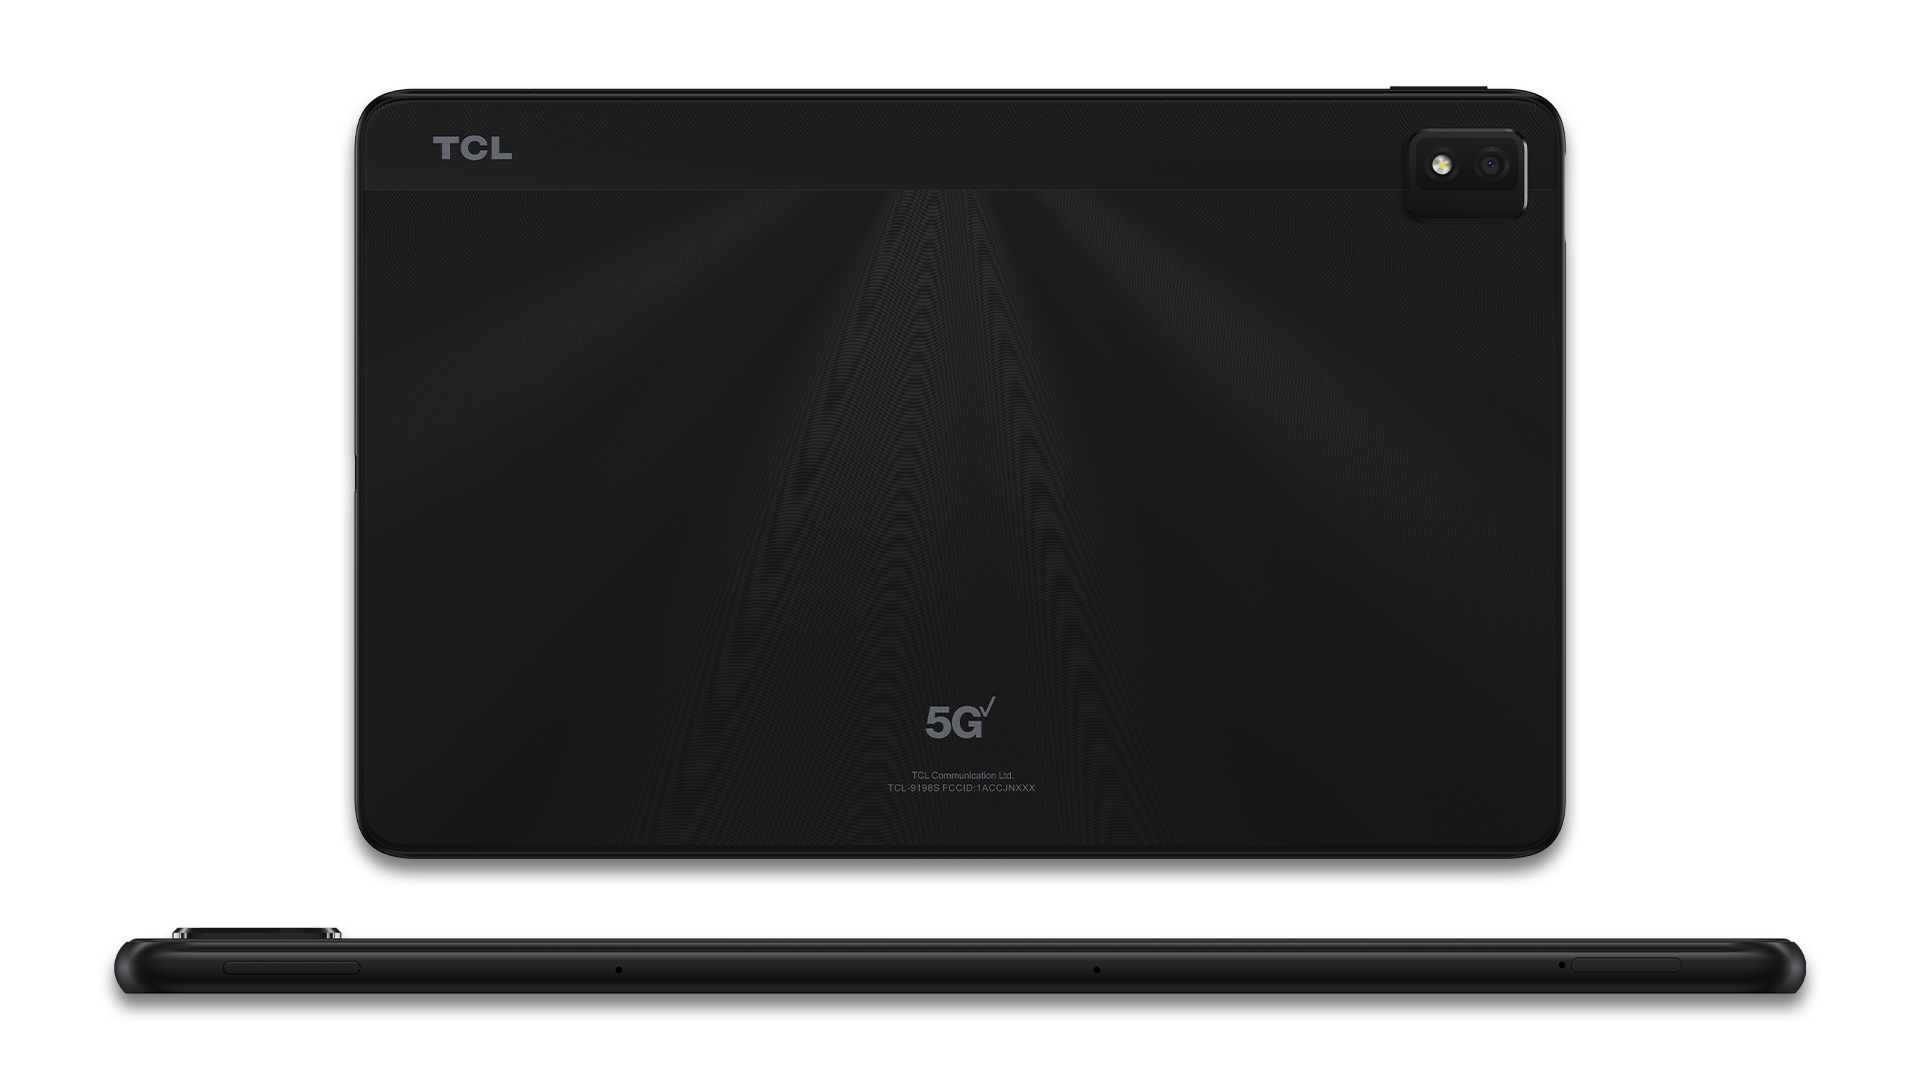 Mặt sau và cấu hình của máy tính bảng TCL TAB Pro 5G.